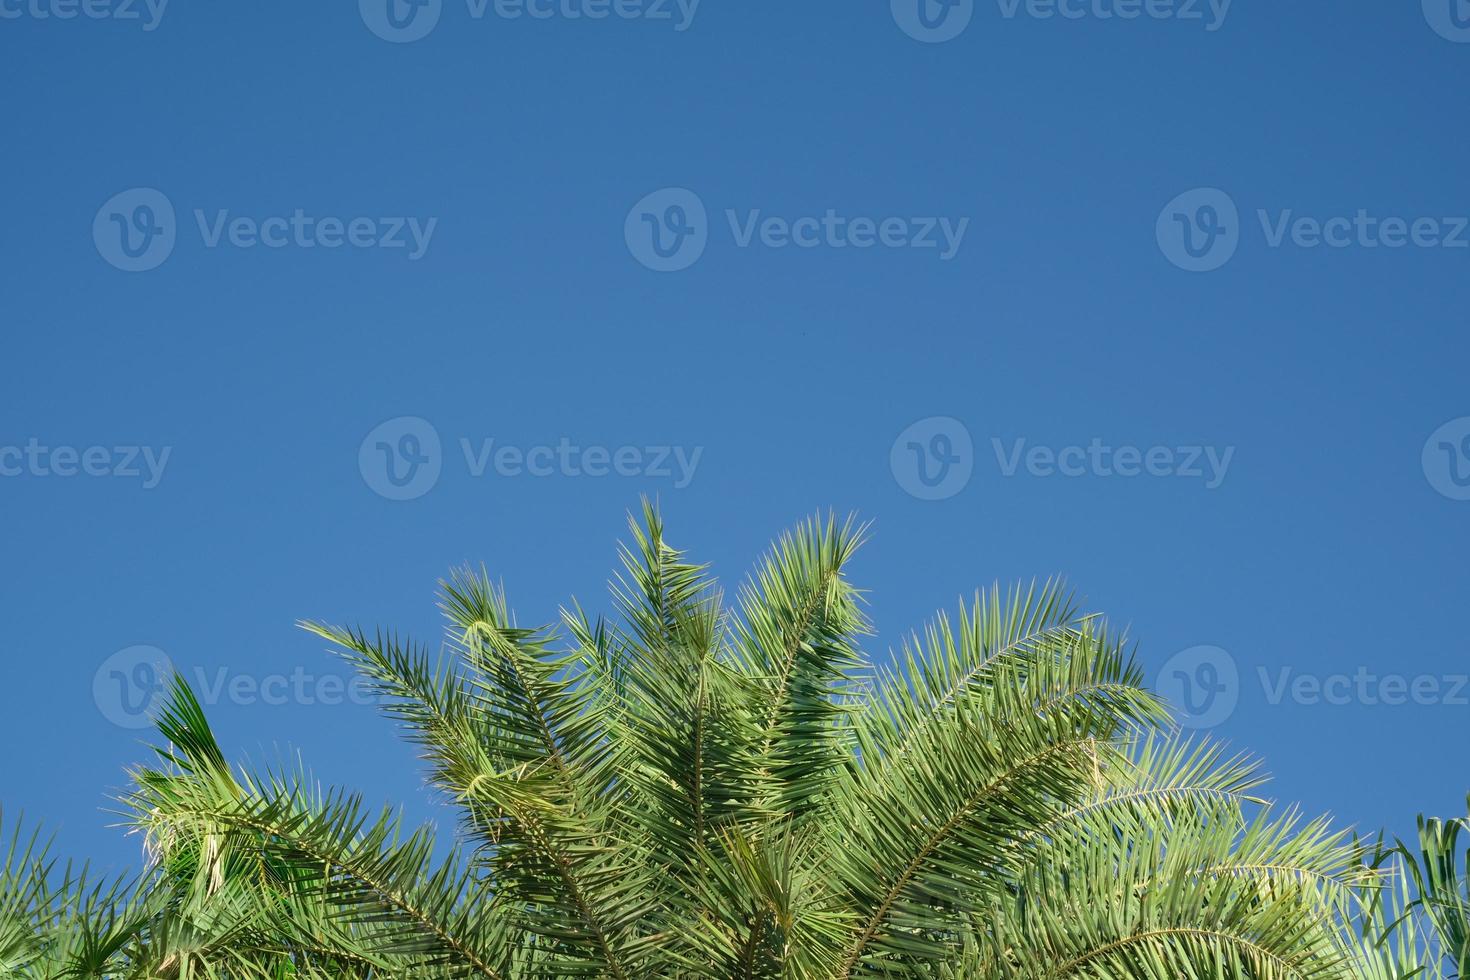 beleza fresco coqueiro verde deixa a forma da curva da árvore no céu azul com fundo nublado. folhas afiadas plantam árvores frutíferas tropicais na tailândia com espaço de cópia para digitar texto. foto